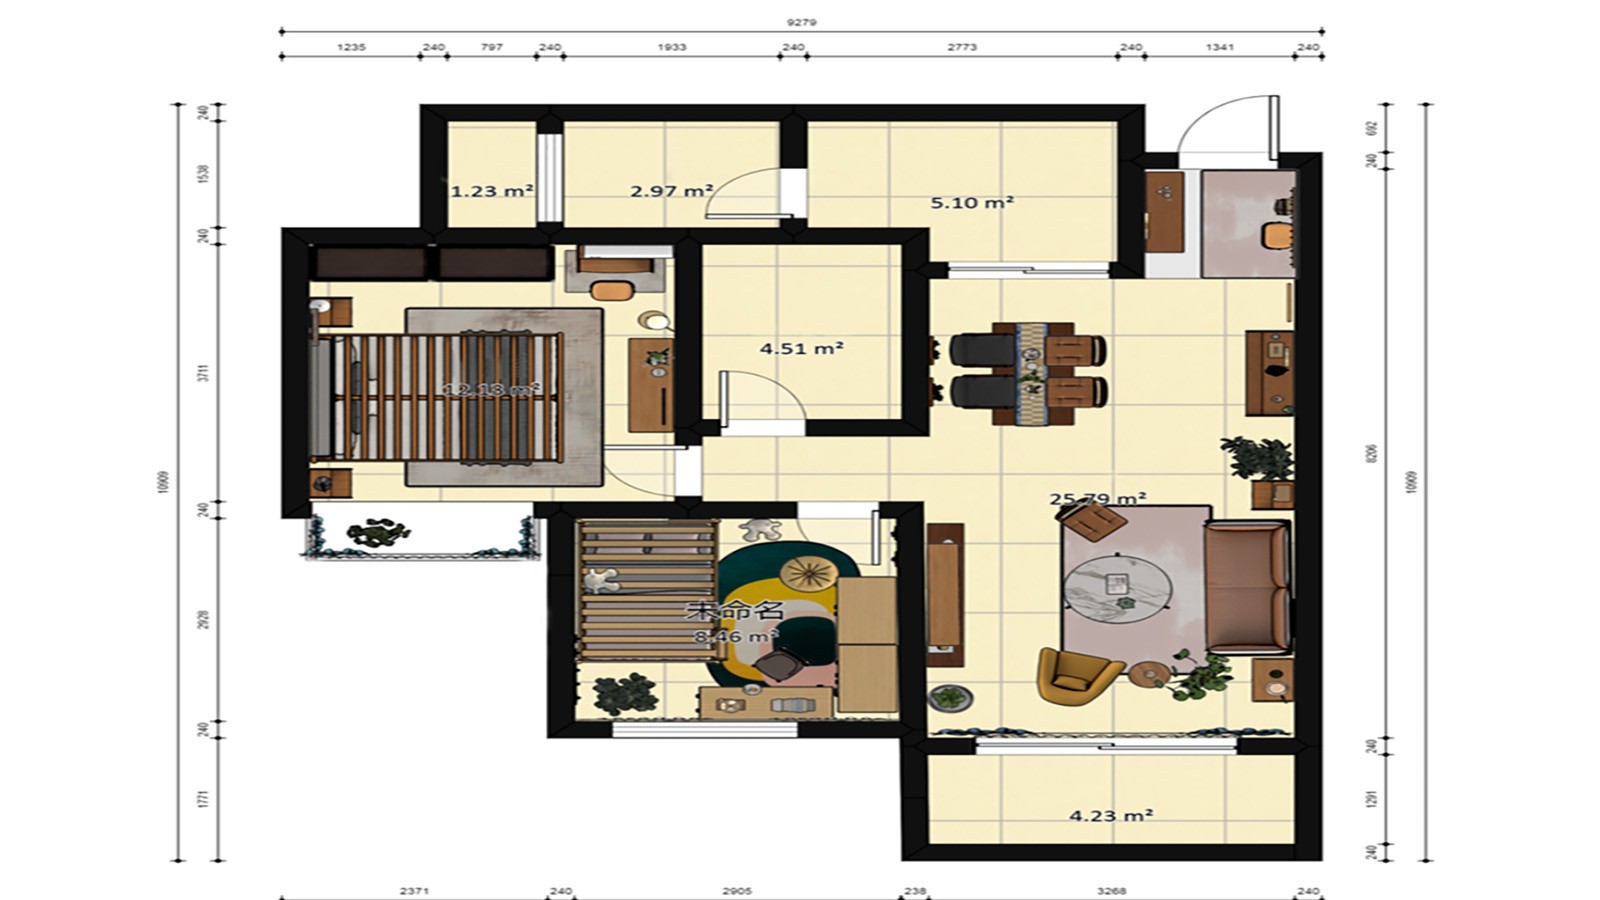 98现代三房装修效果图,蔓延着爱意满屋装修案例效果图-美广网